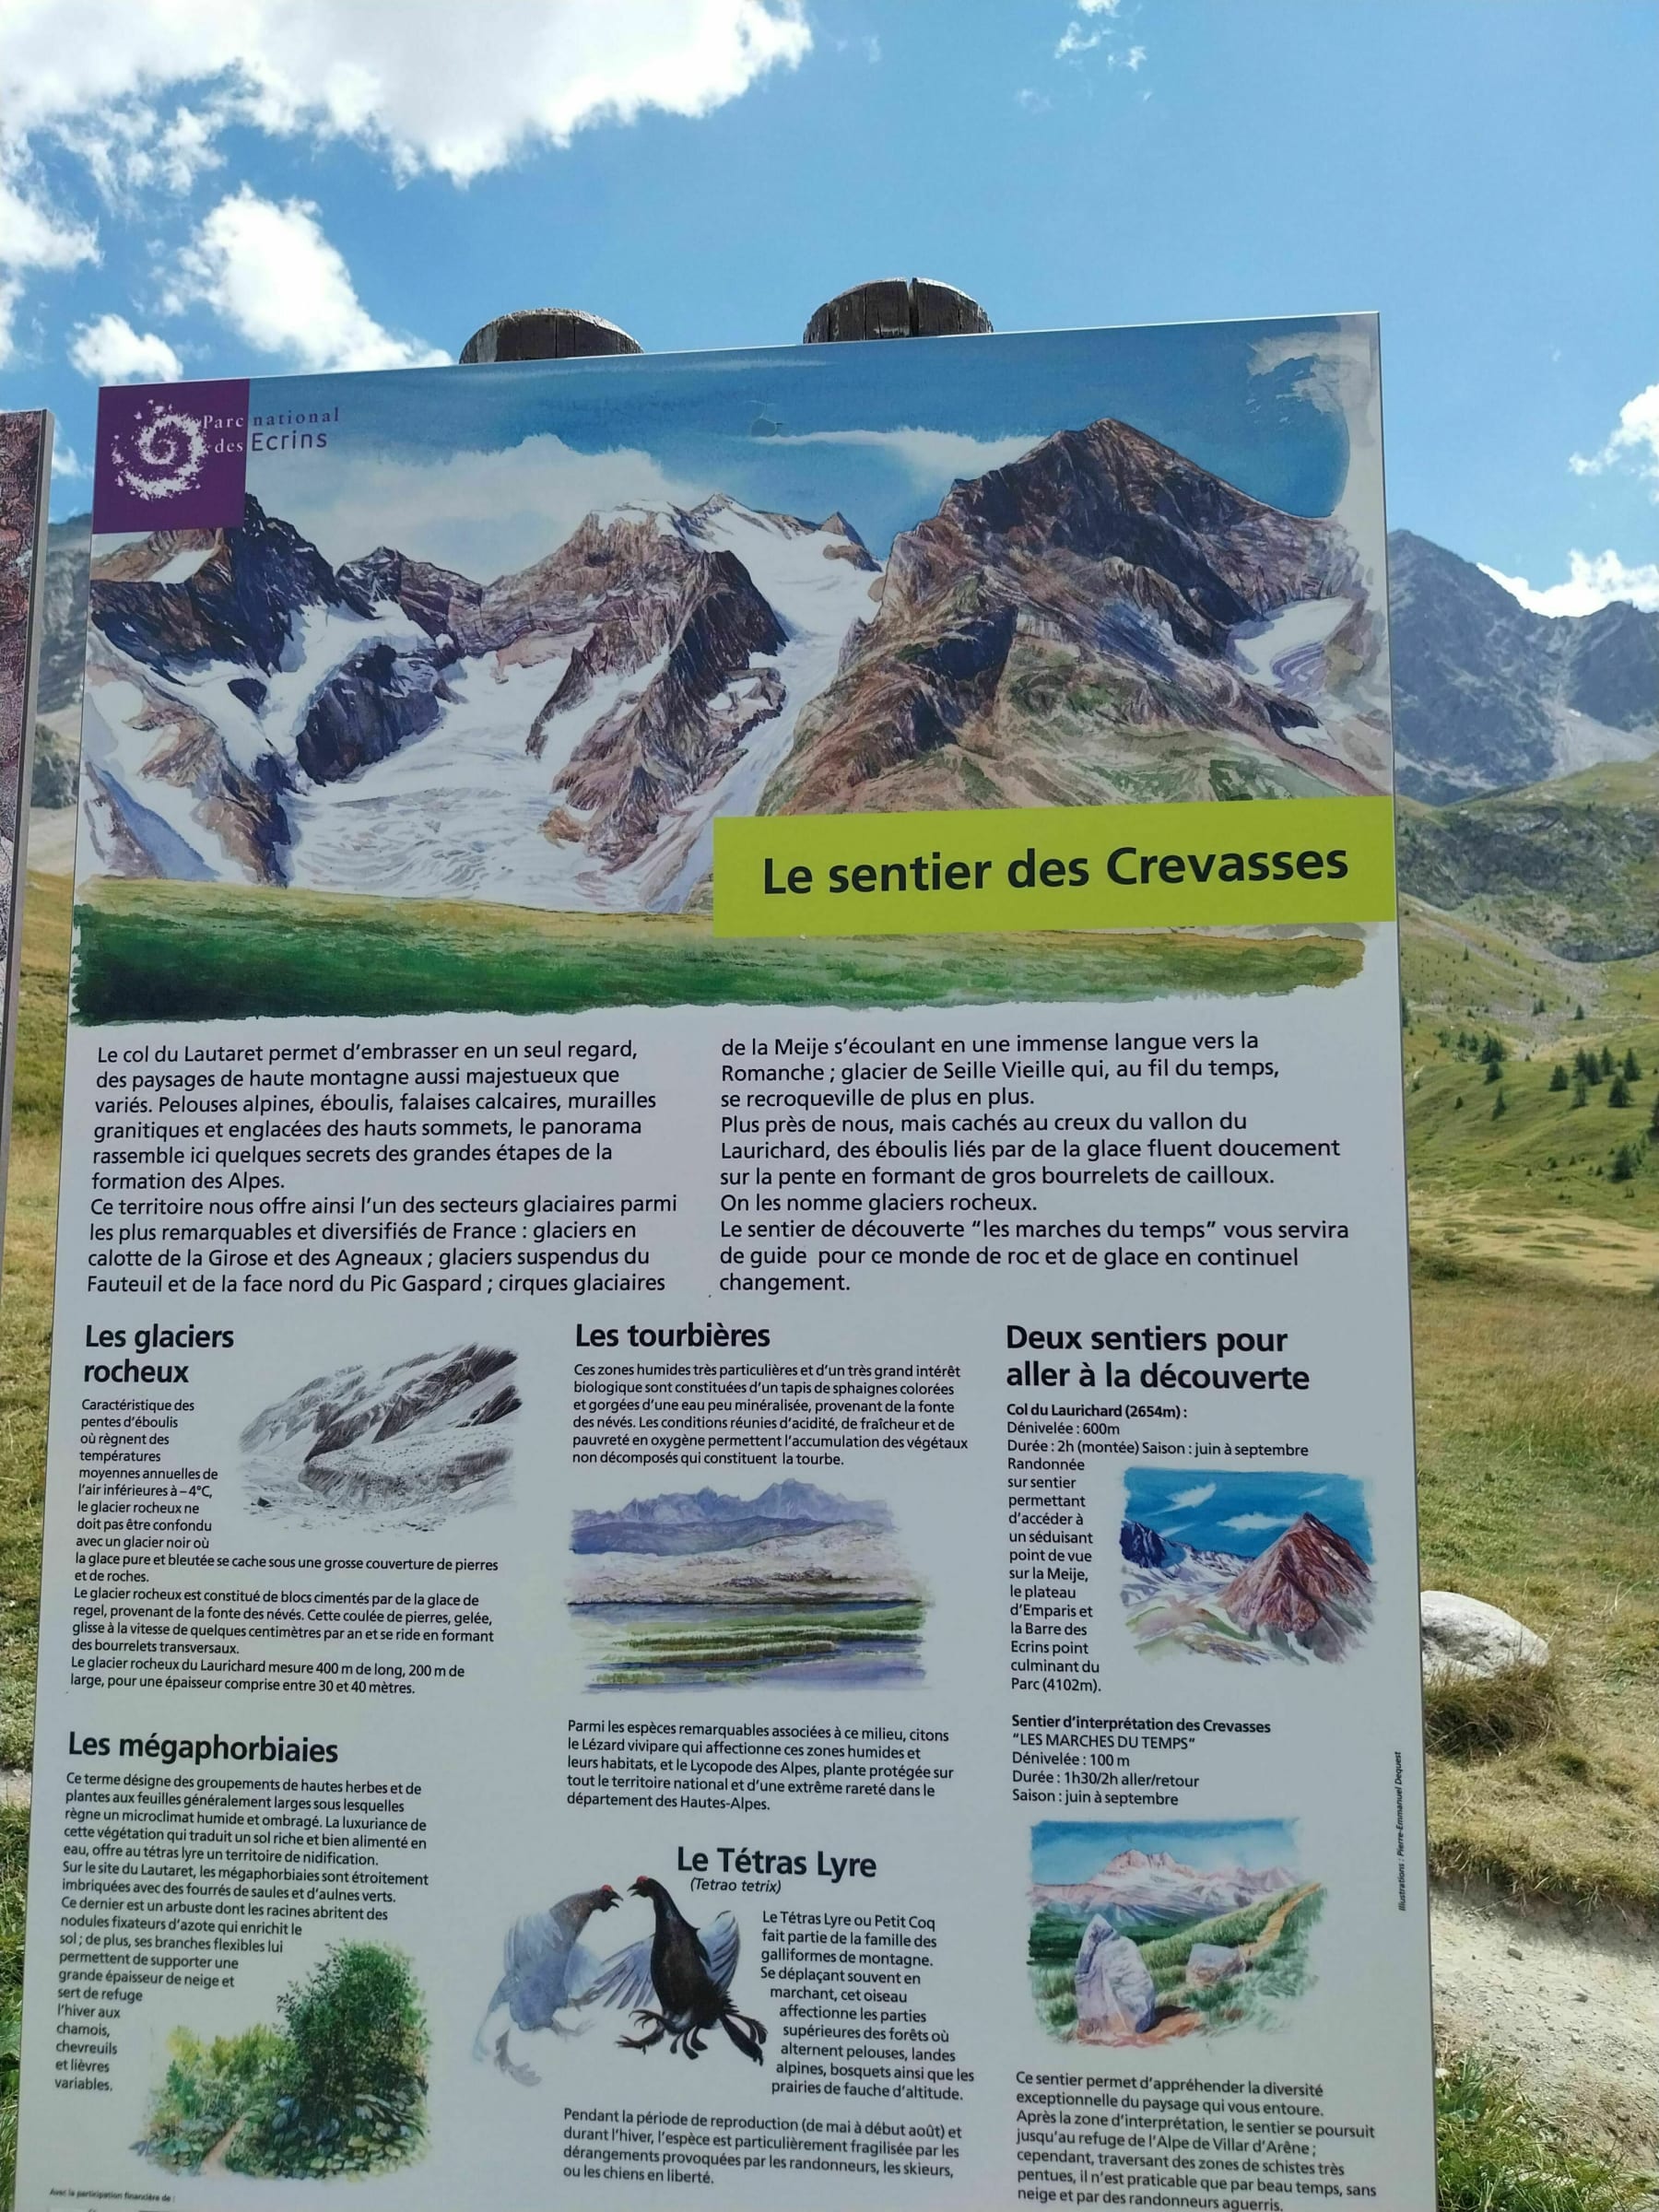 Randonnée Villar-d'Arêne - Sentier des crevasses dans les Hautes Alpes.